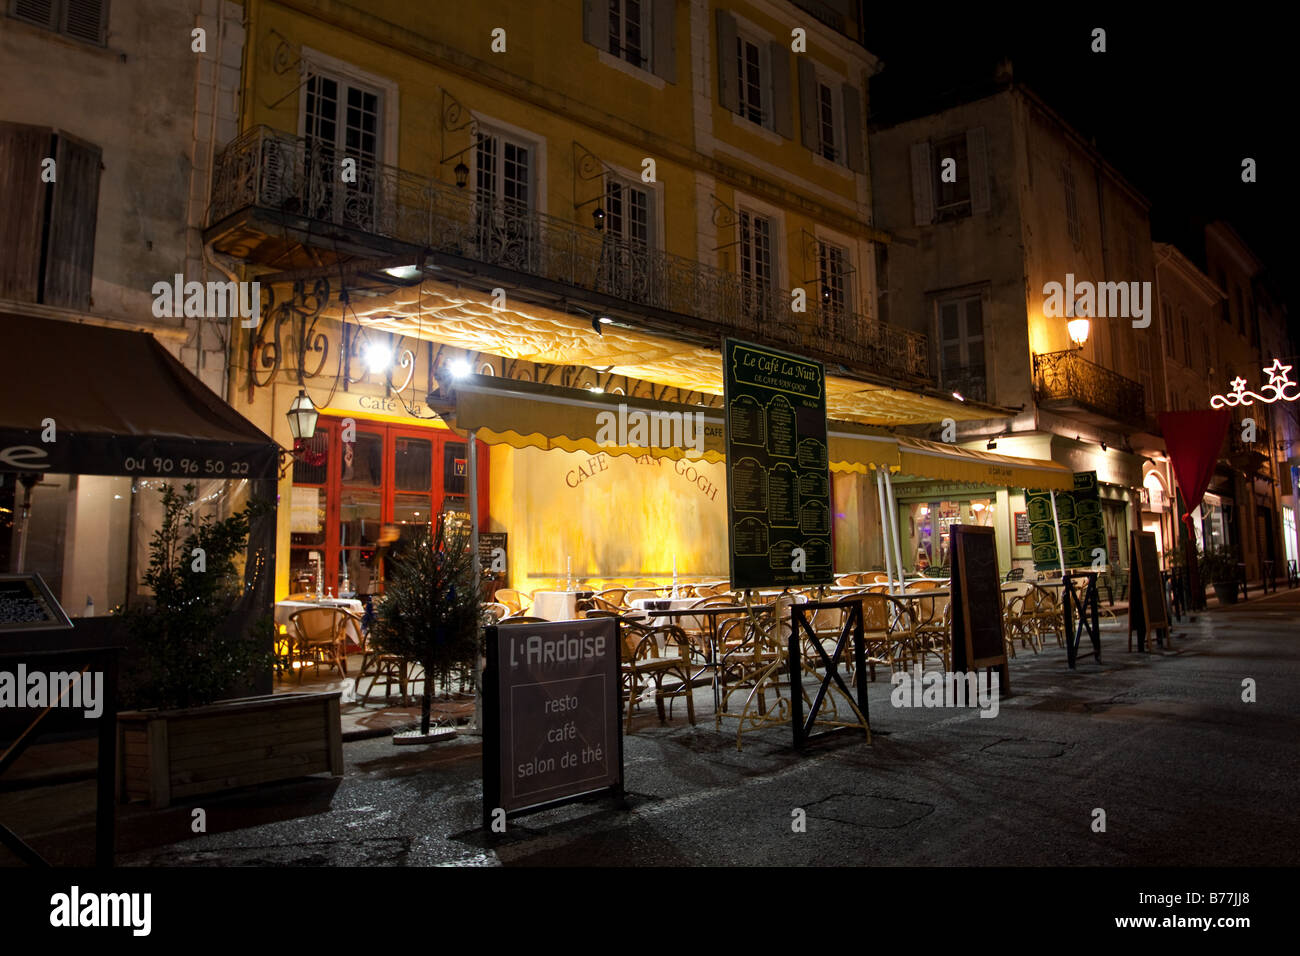 Cafe Van Gogh in Arles, Le Cafe Le Nuit, Terrasse de Cafe La Nuit Stock Photo